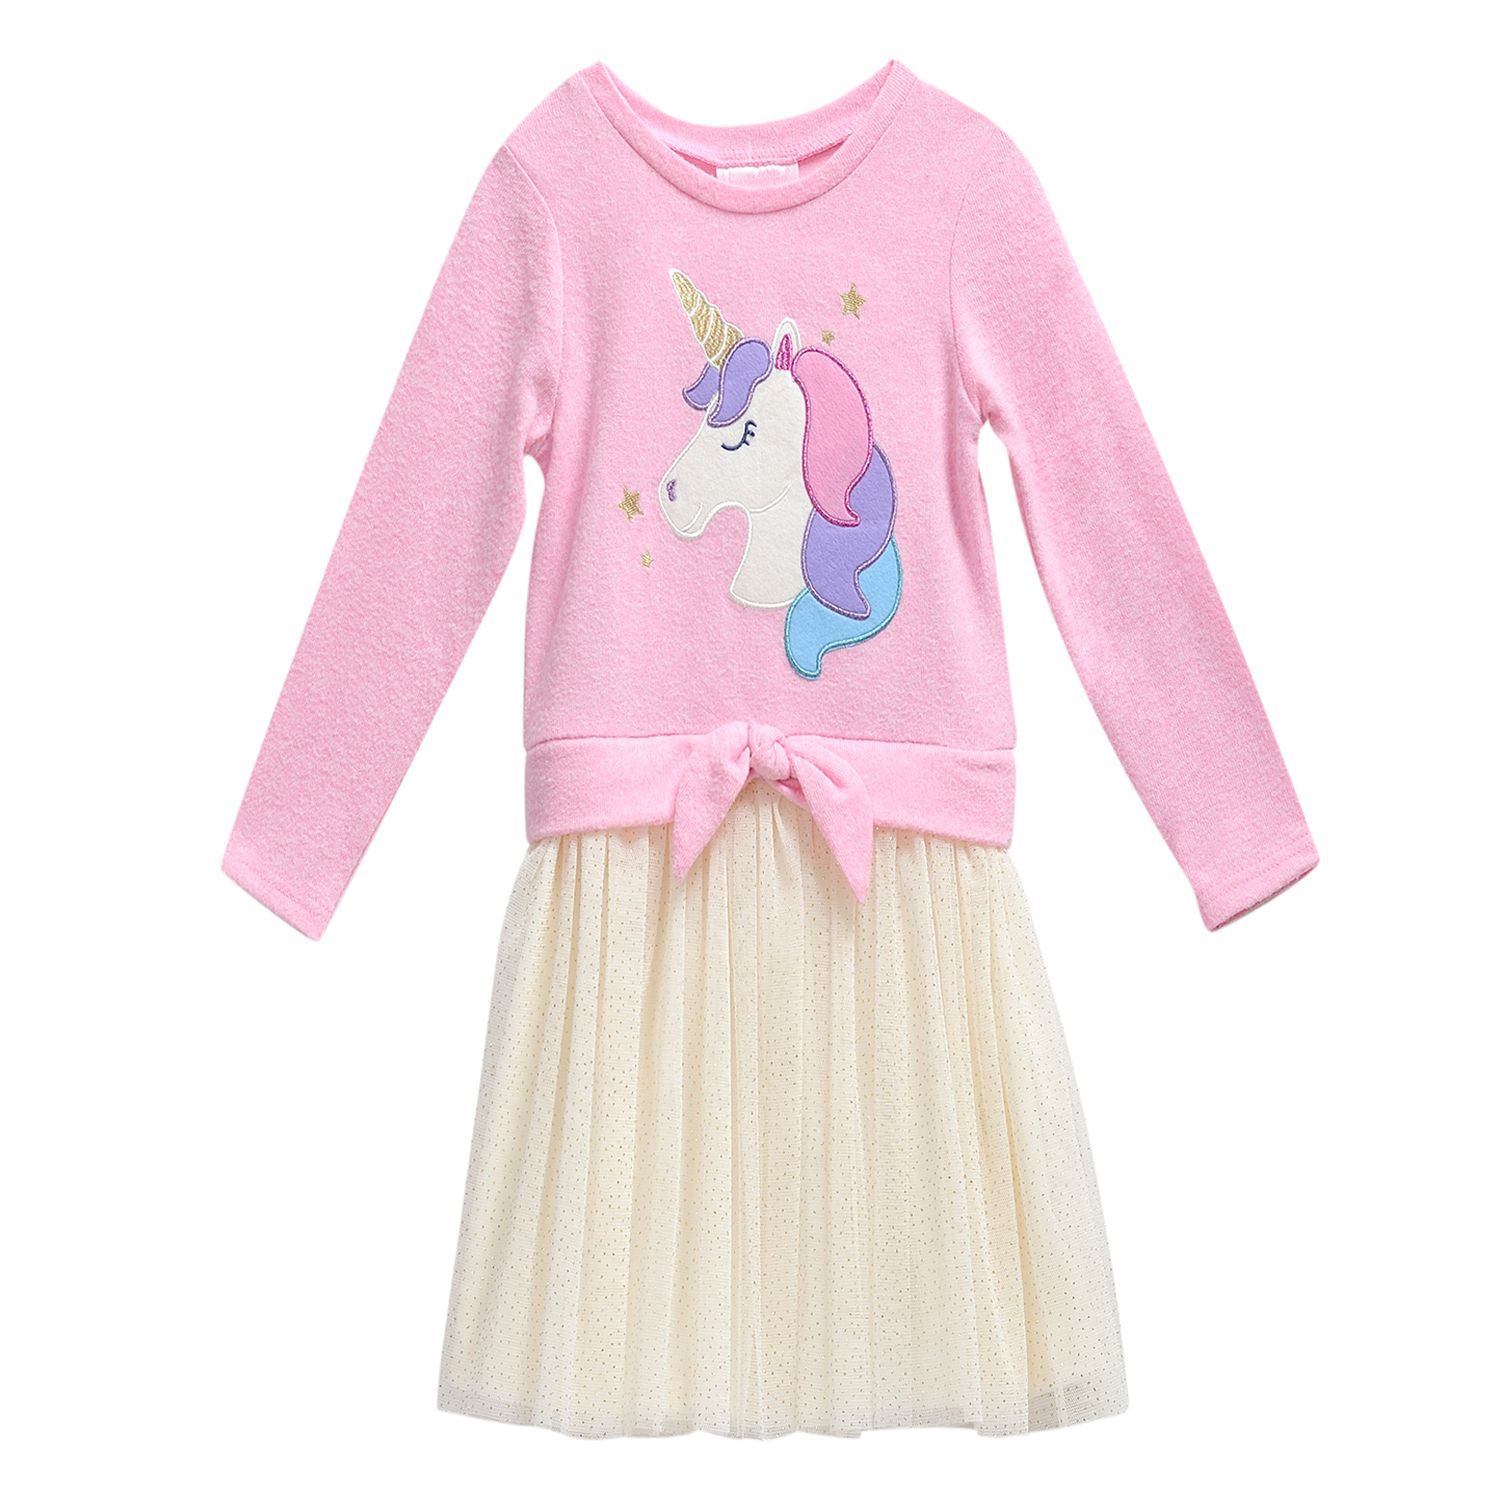 youngland unicorn dress